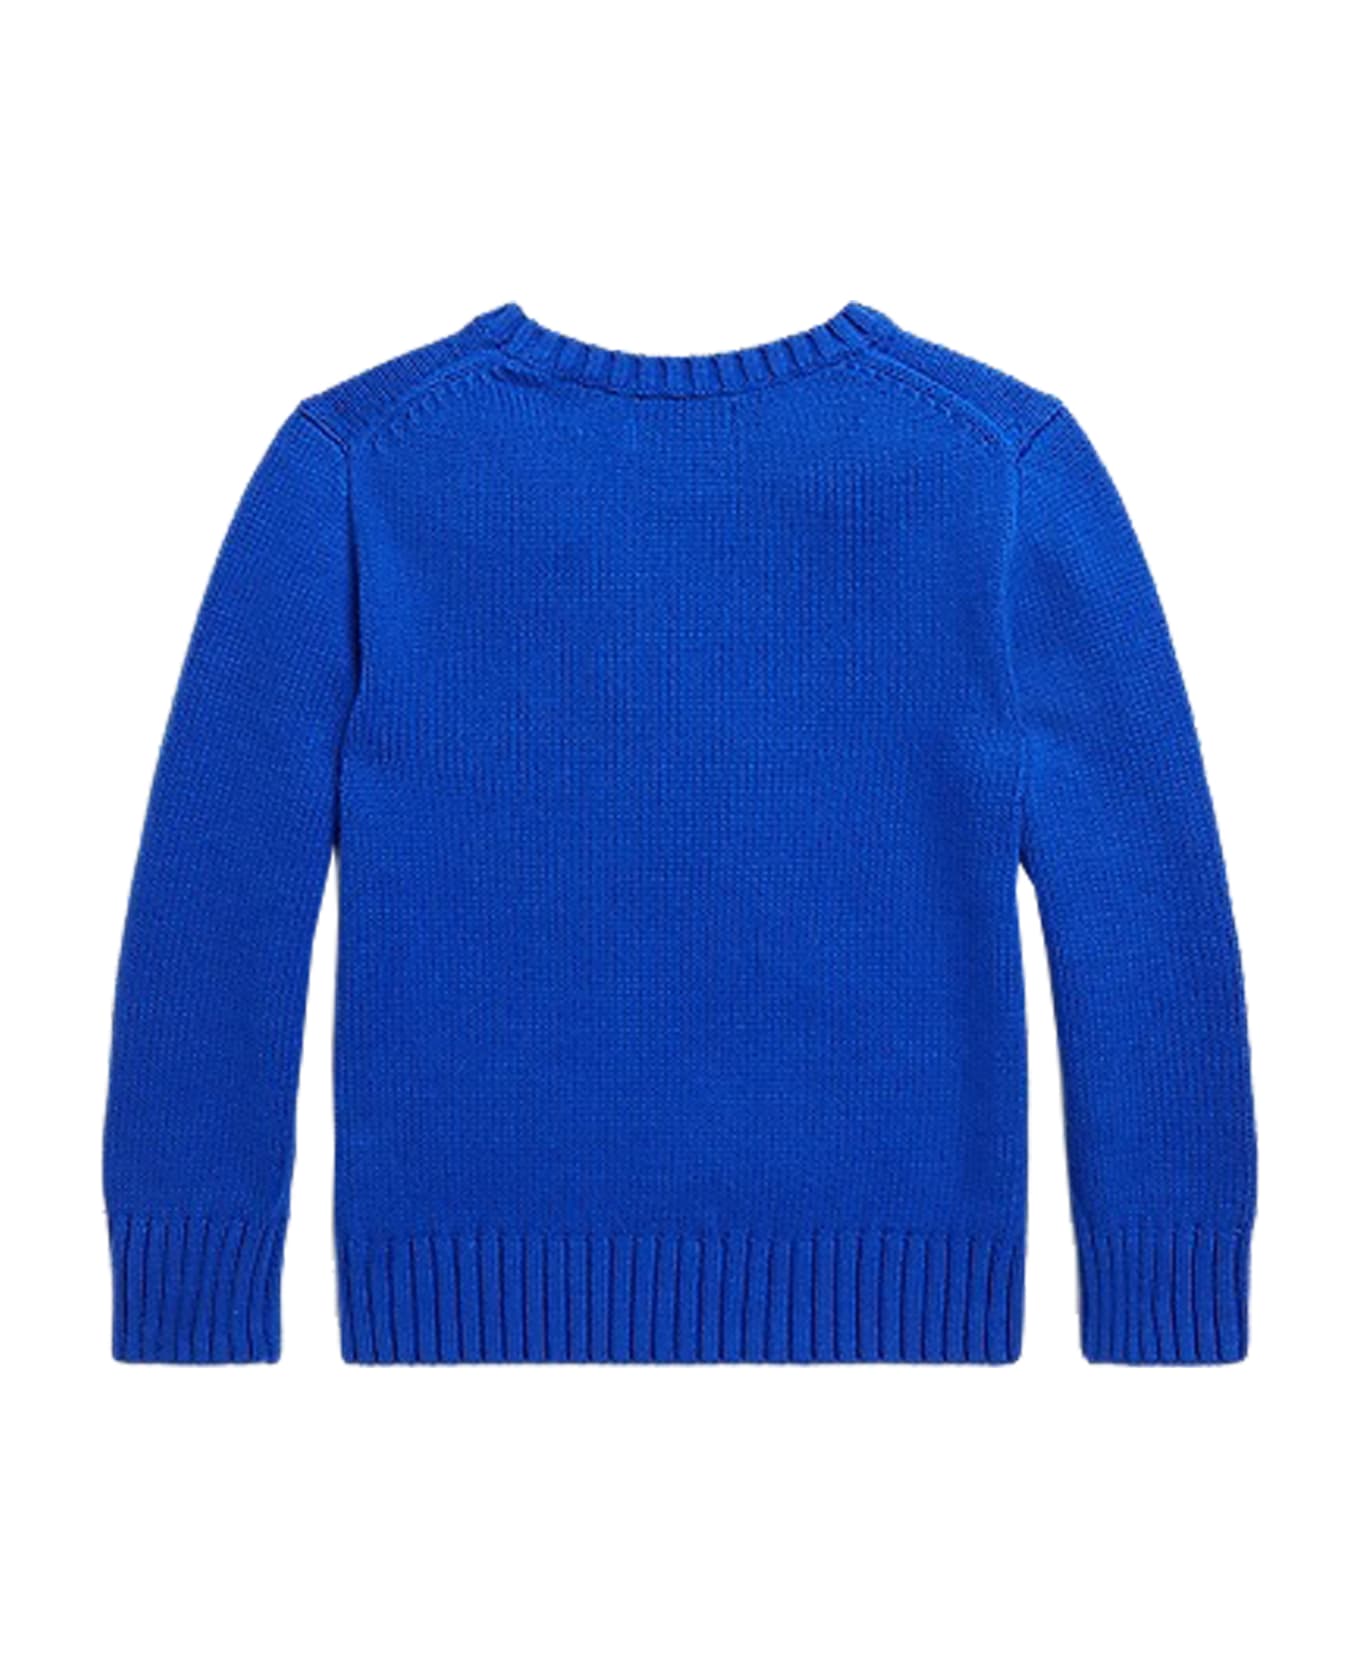 Ralph Lauren Polo Bear Cotton Sweater - Light blue